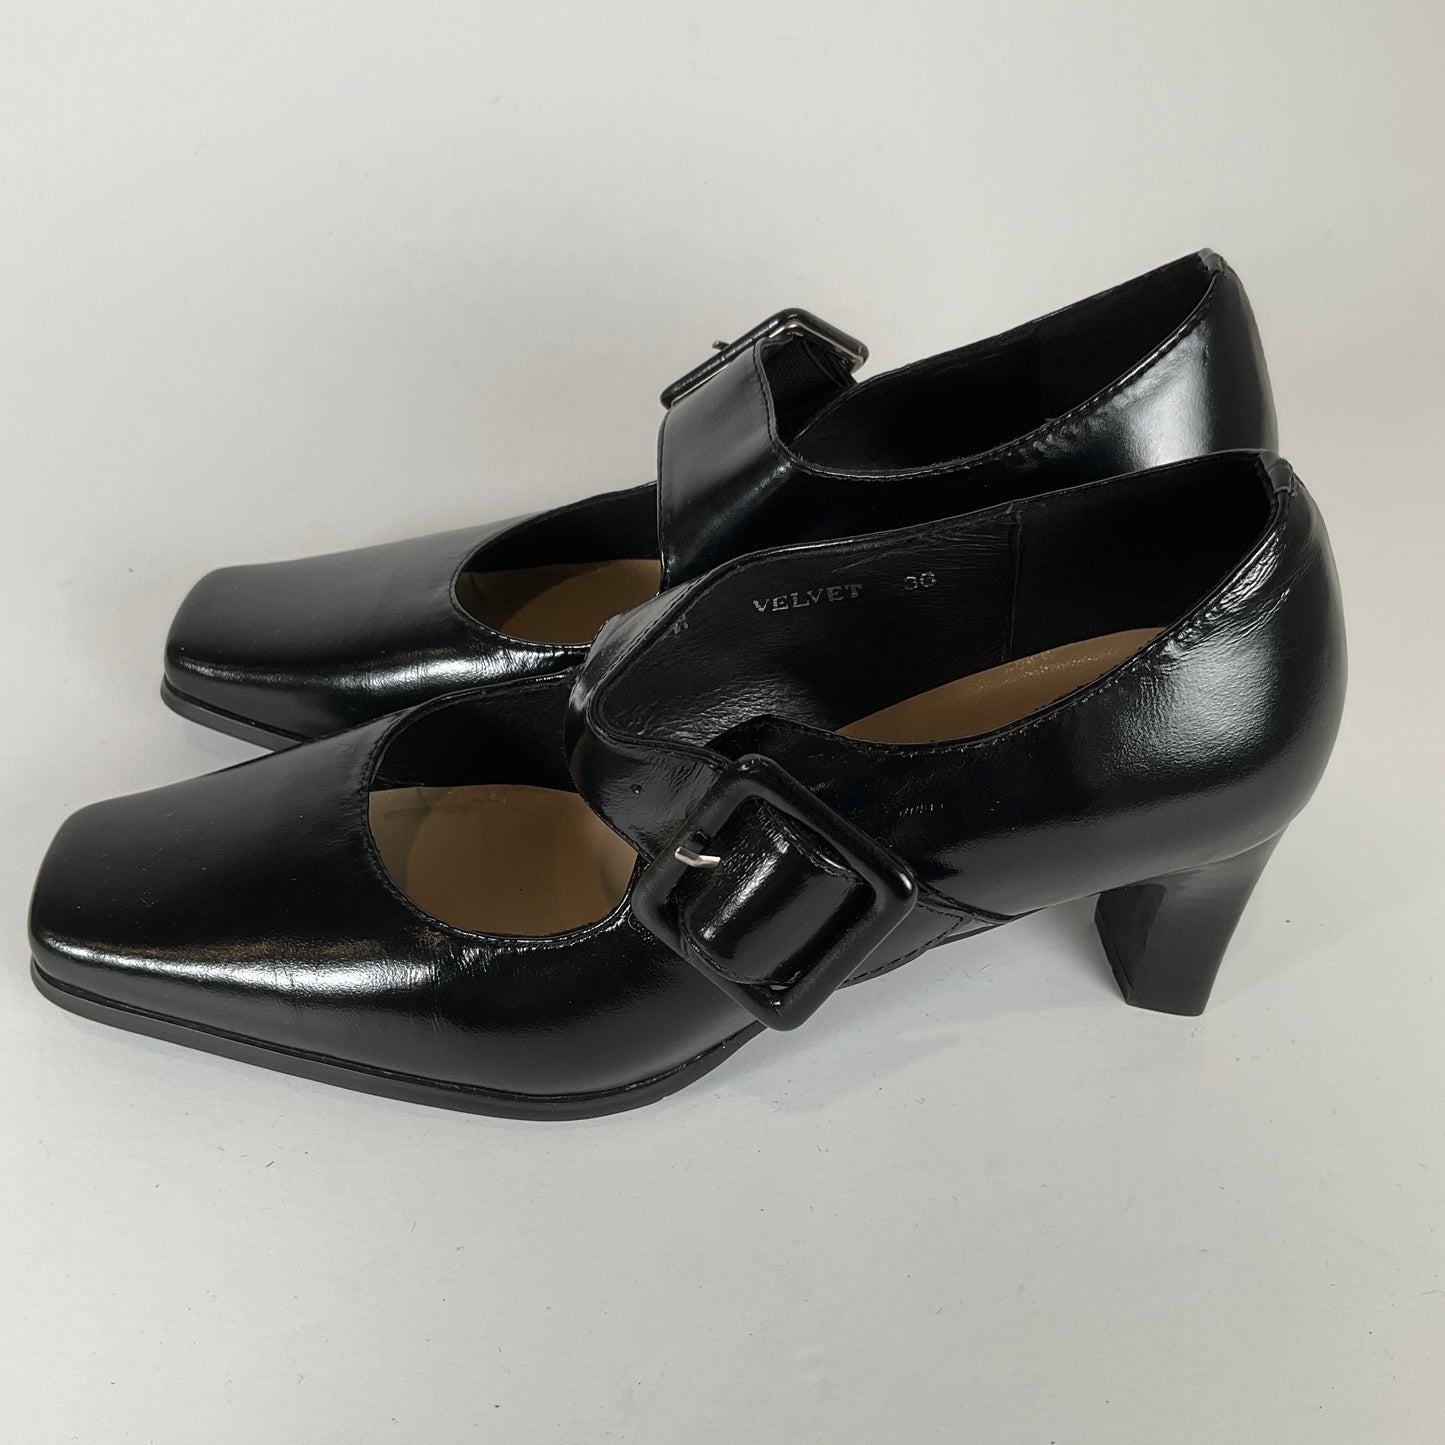 Bellini - Black Velvet Shoes - Size 36